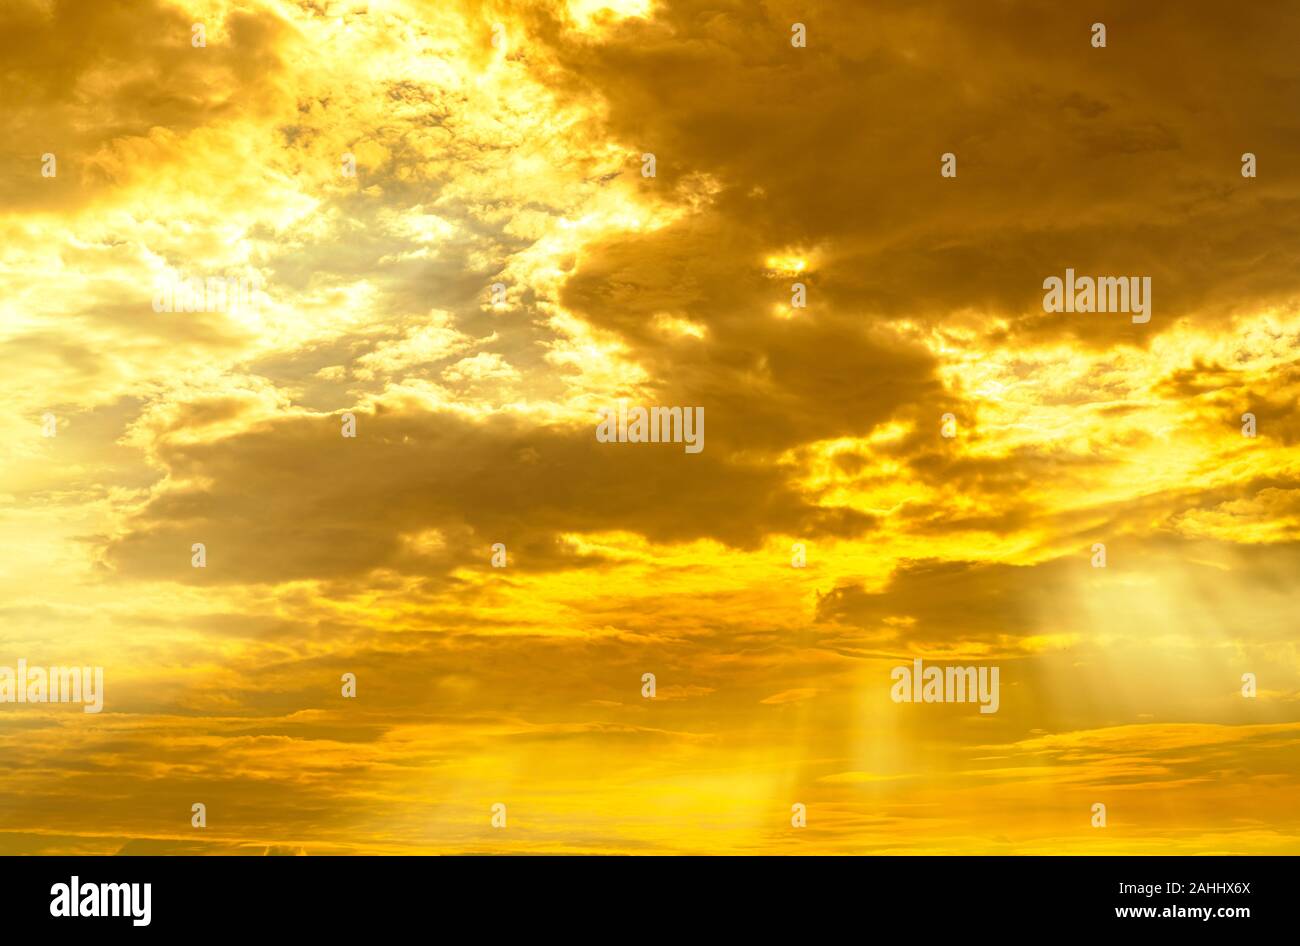 Gottes Licht. Dramatische golden bewölkten Himmel mit Sun Beam. Gelbe Sonne strahlen durch Goldene Wolken. Gottes Licht vom Himmel für Hoffnung und Gläubigen Konzept. Stockfoto